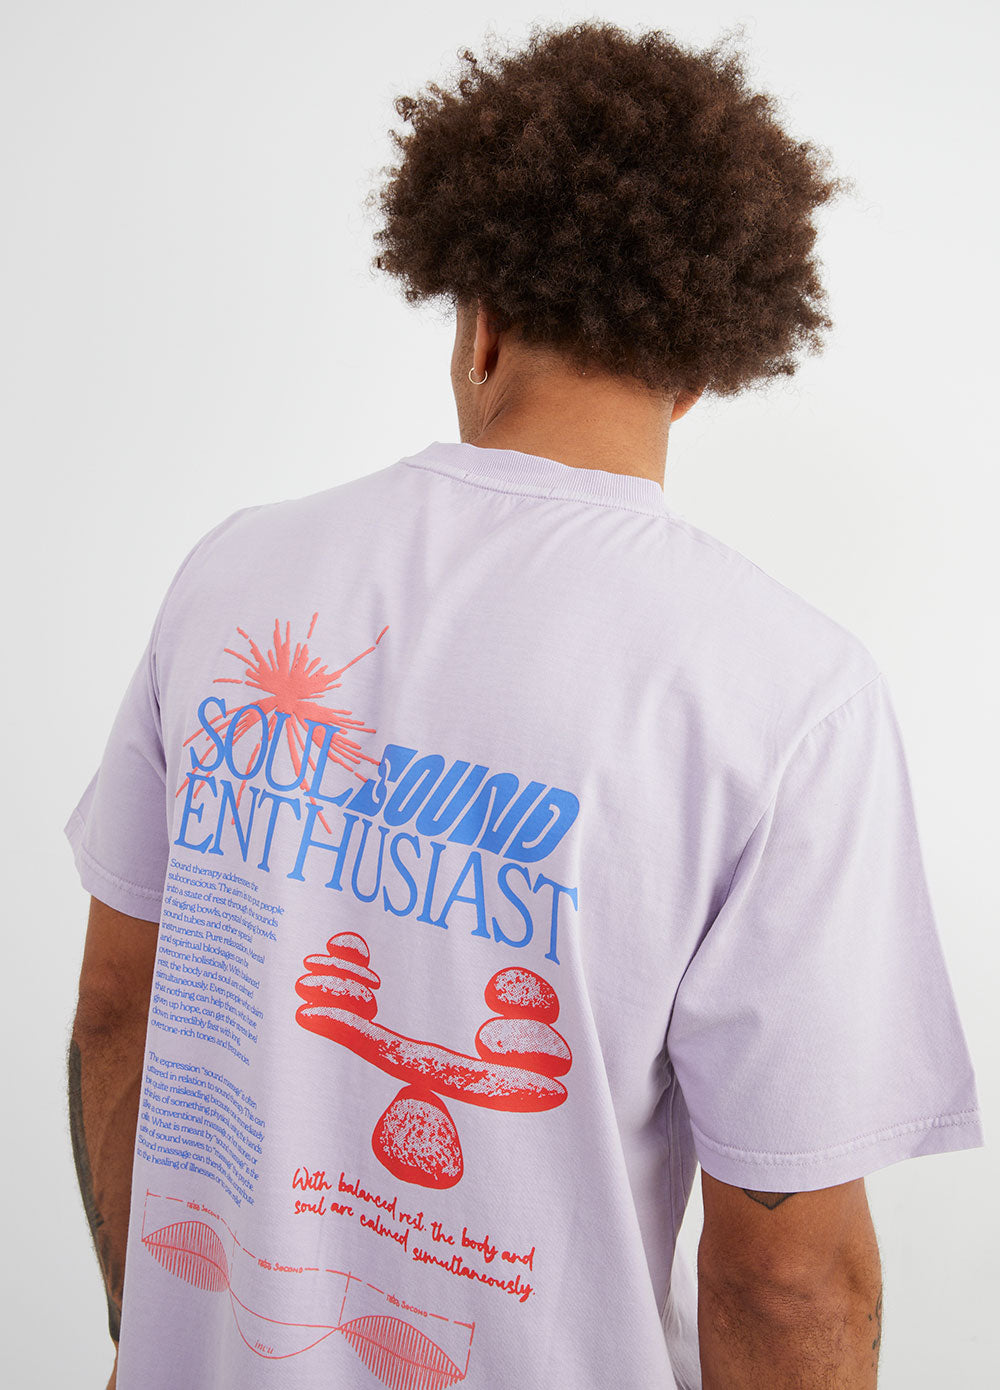 Soul Sound Enthusiast T-Shirt